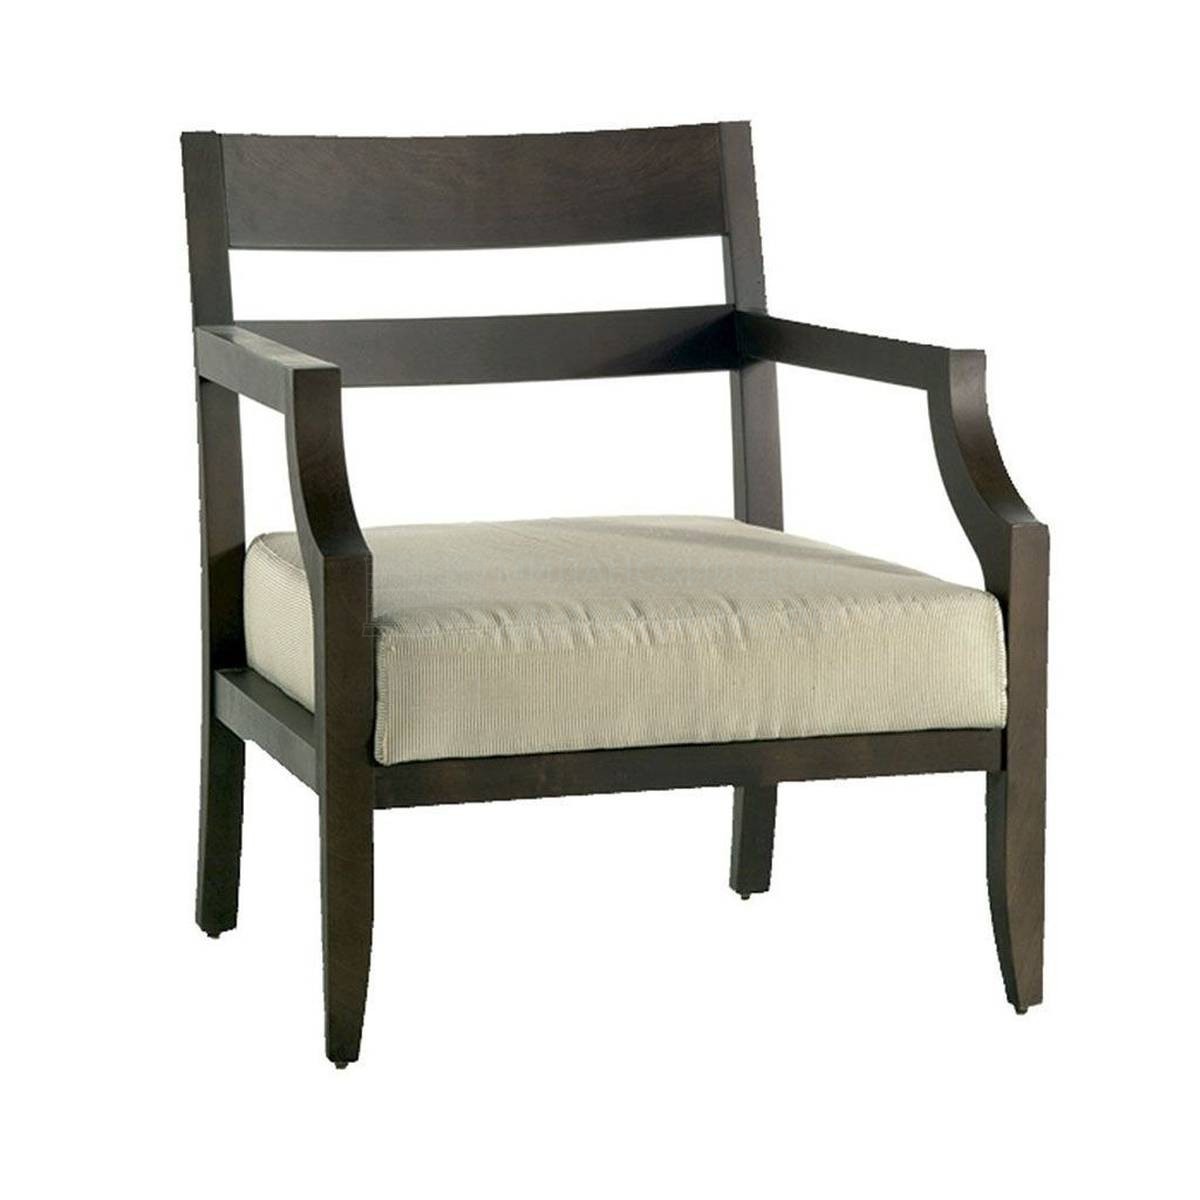 Кресло M-3350 armchair из Испании фабрики GUADARTE